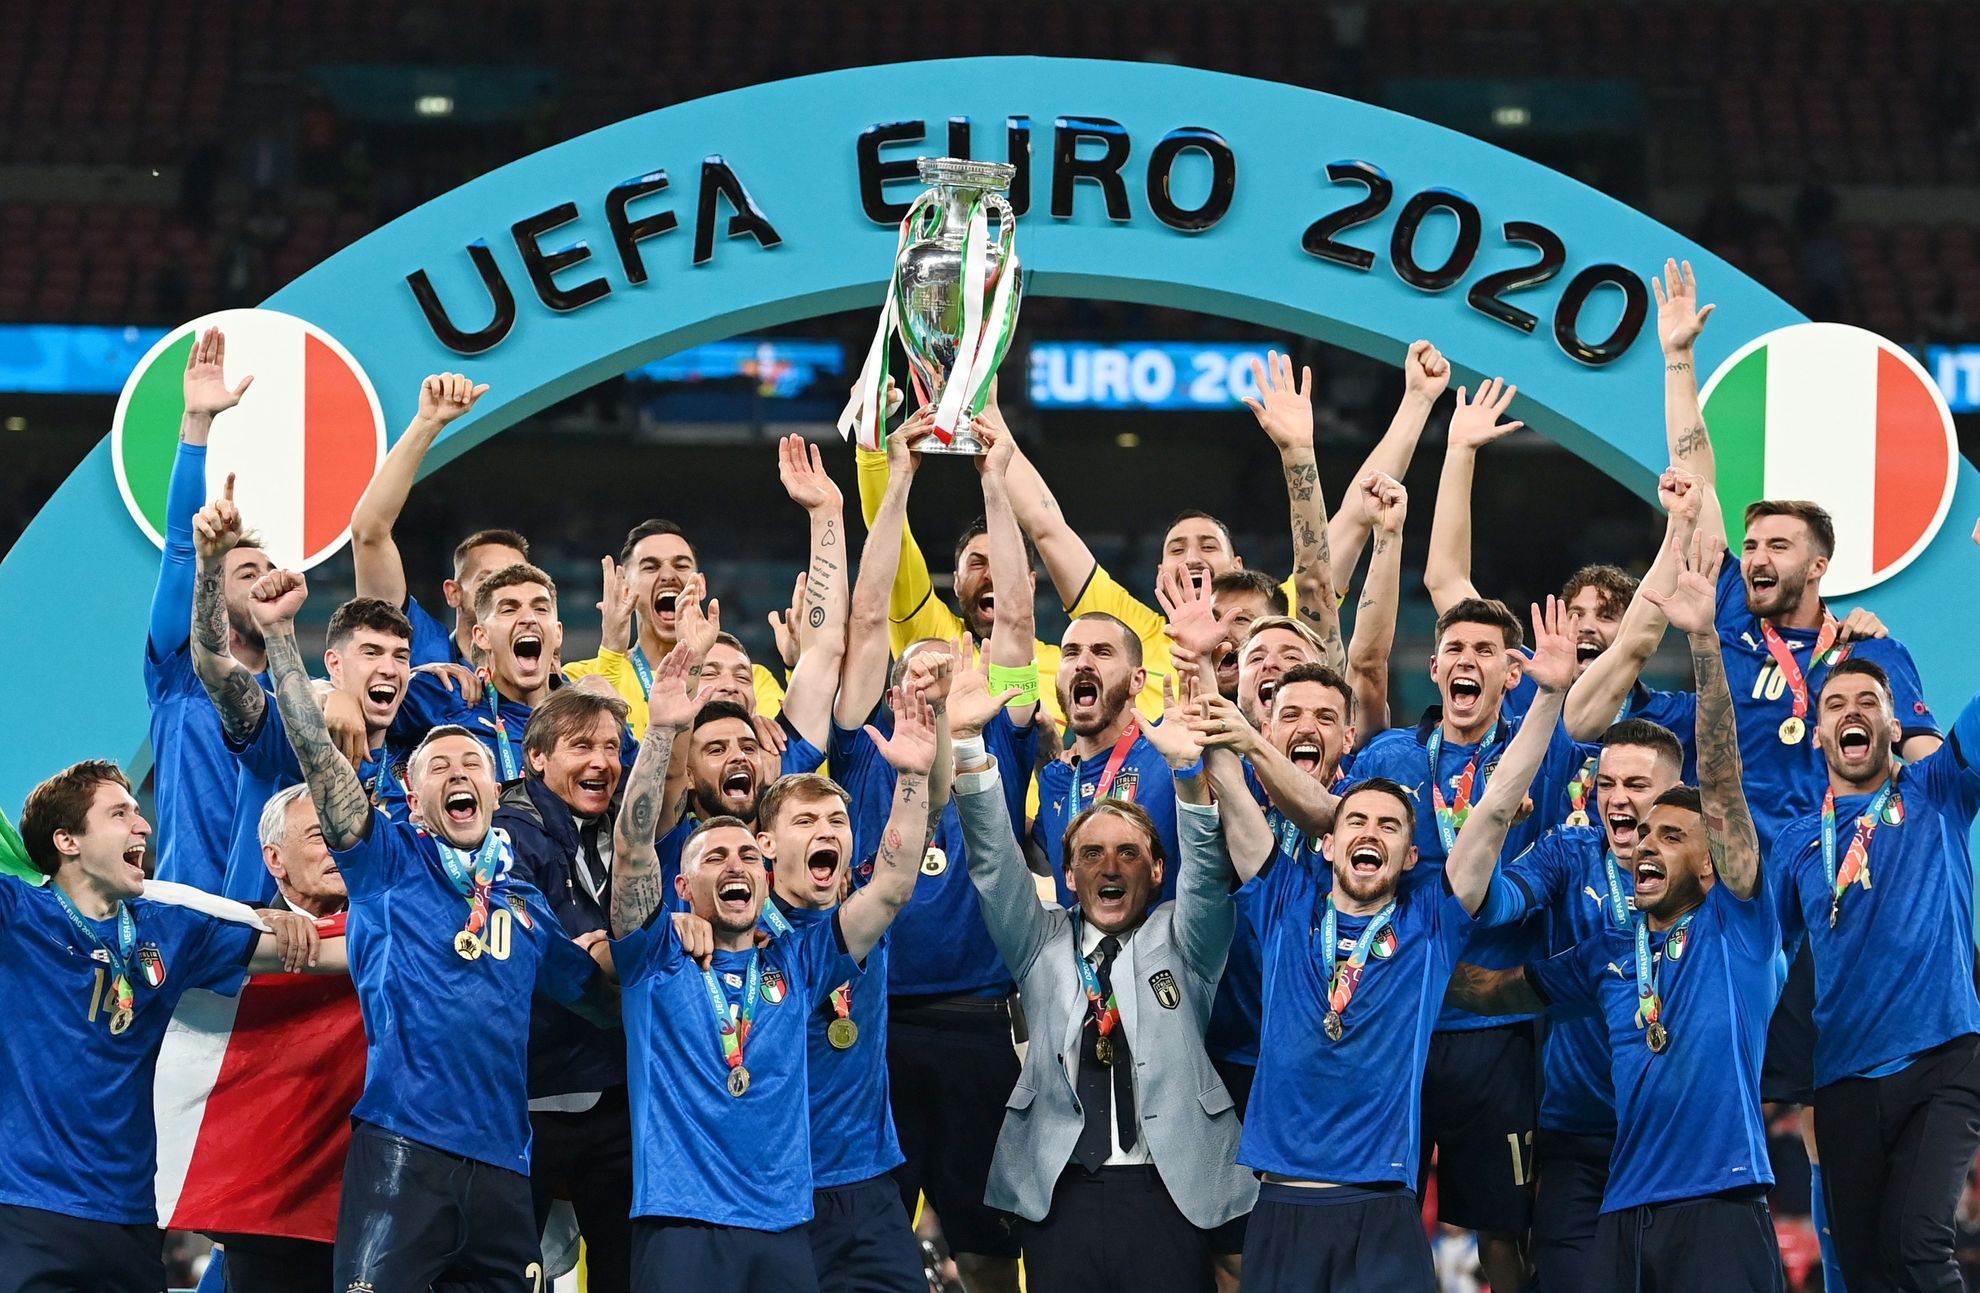 La finale di calcio di Euro 2020 si deciderà ai rigori.  Il titolo è celebrato dagli italiani, l’attesa inglese continua